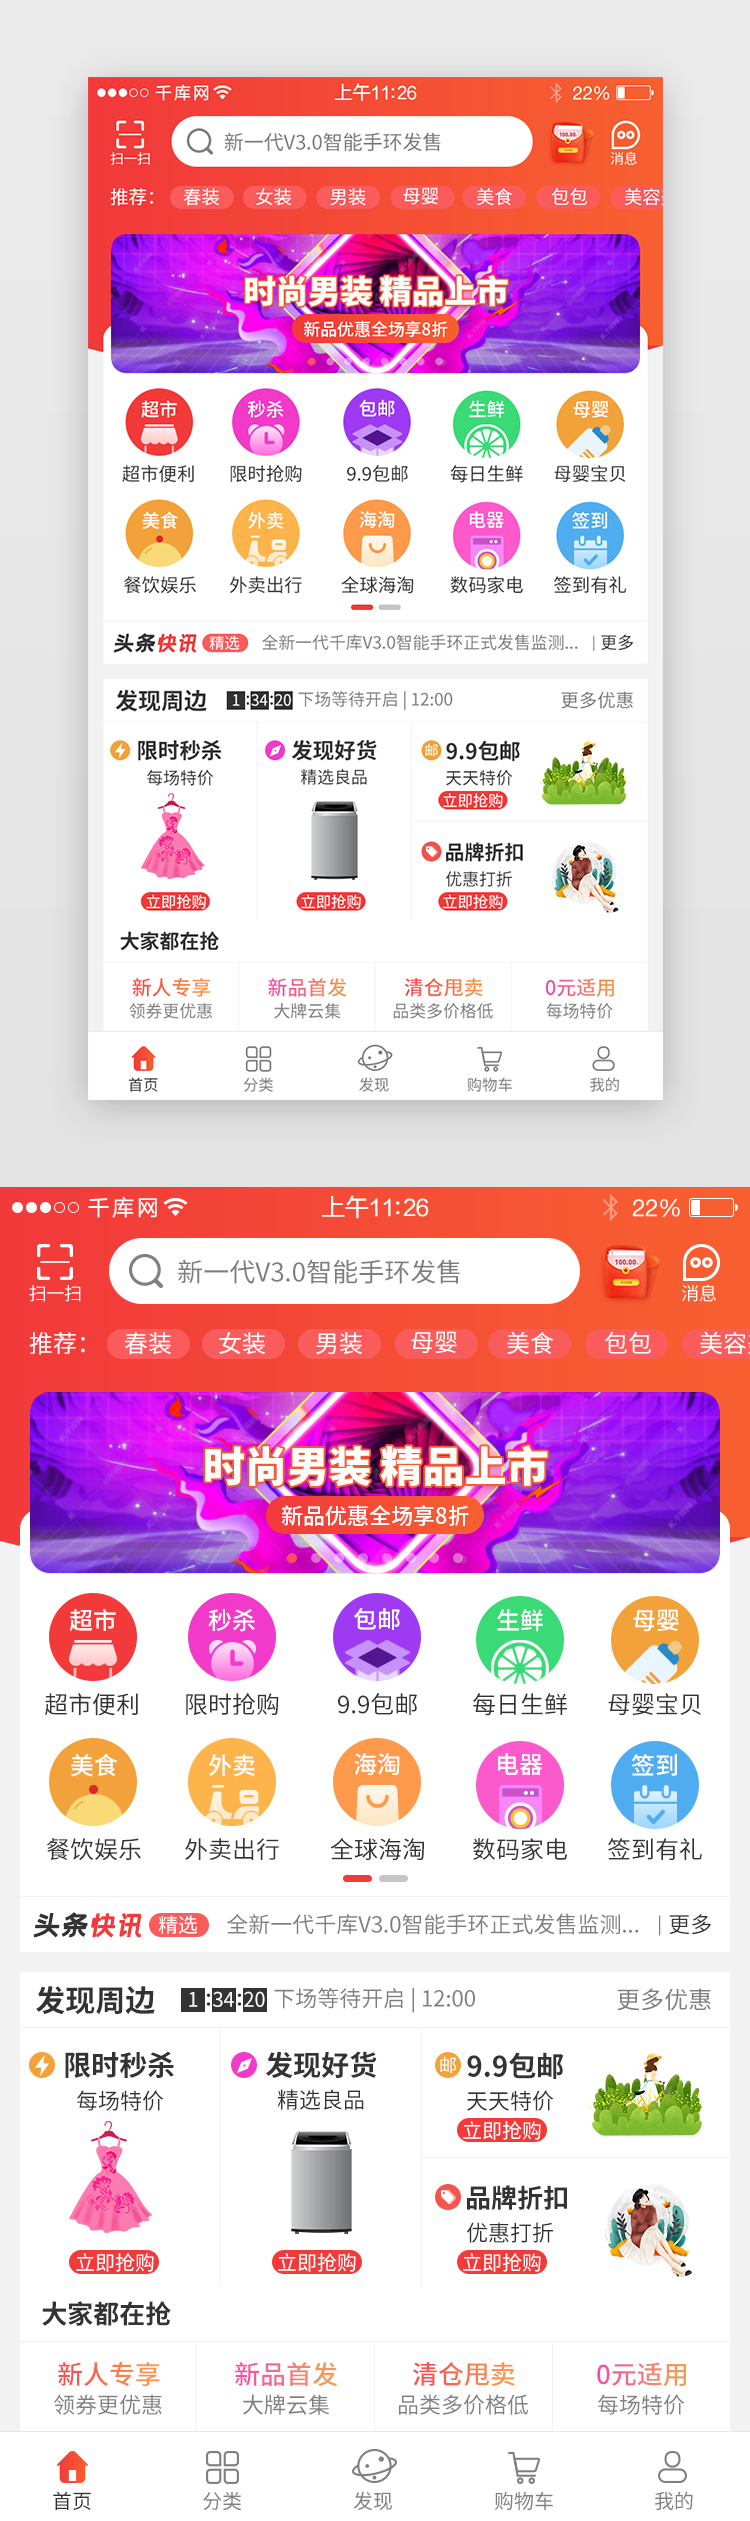 红色系综合电商app界面图片